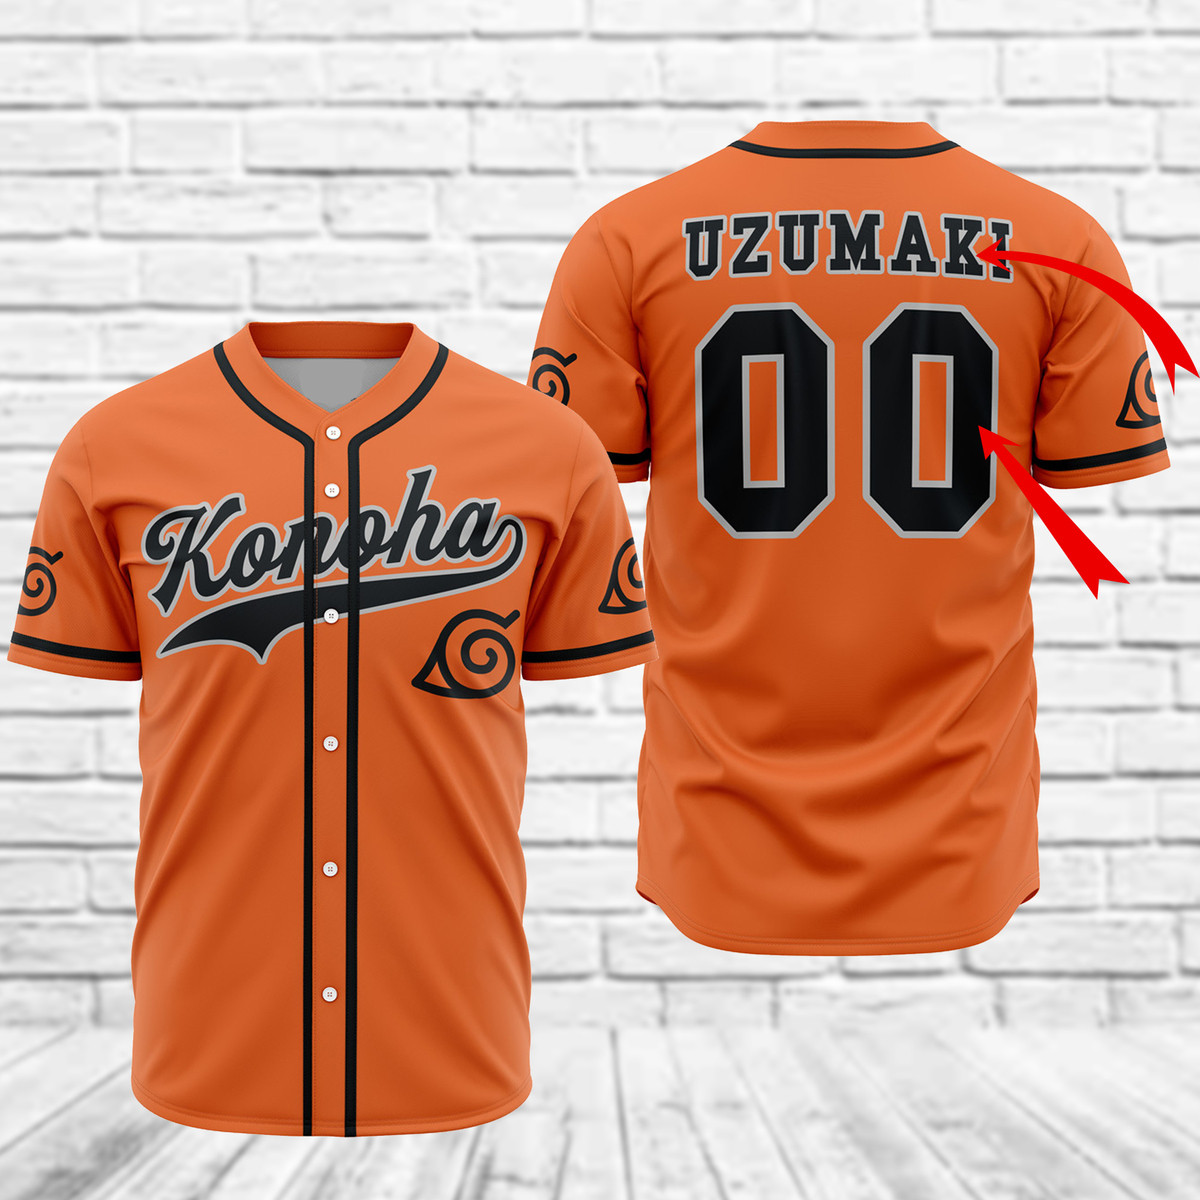 Personalized Konoha Uzumaki Baseball Jersey